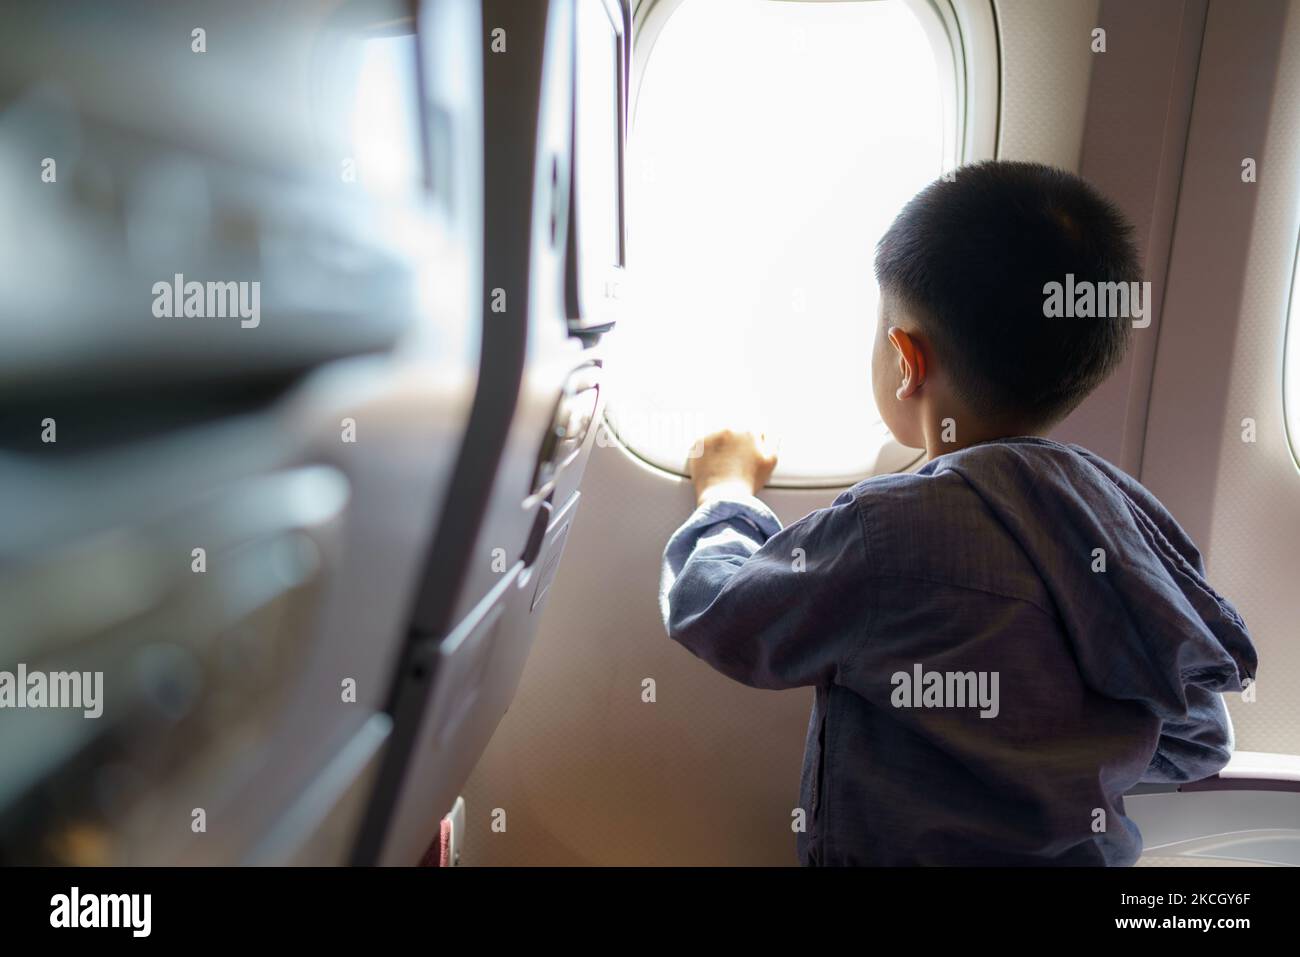 Les enfants asiatiques regardent la vue aérienne du ciel et des nuages à l'extérieur de la fenêtre de l'avion tout en étant assis sur le siège de l'avion. Banque D'Images